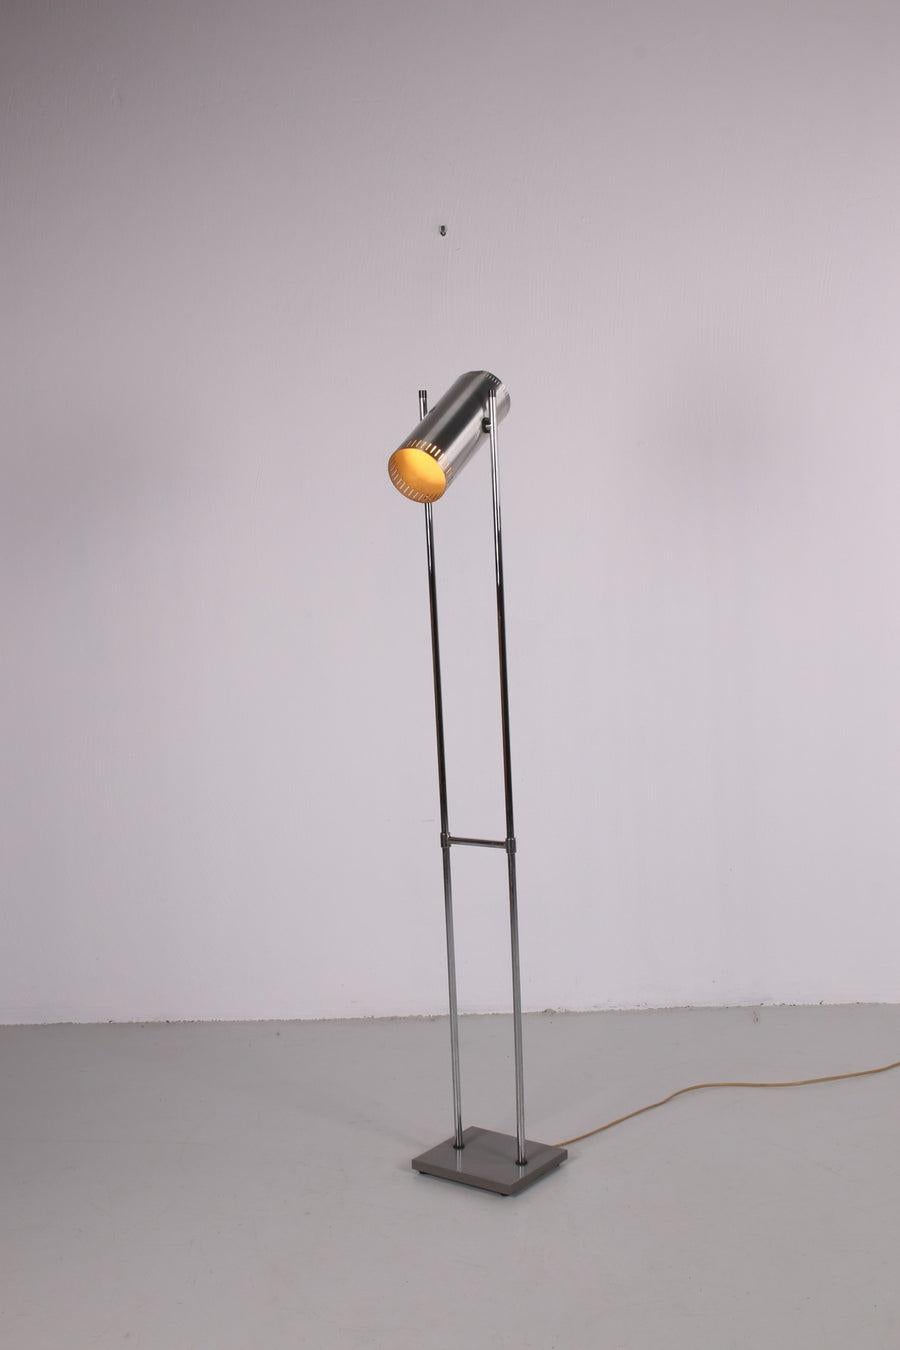 Trombone II, lampadaire en aluminium de Jo Hammerborg pour Fog & Mørup en 1966 - a 
Magnifique lampadaire danois du milieu du siècle en très bon état vintage.

Un lampadaire de forme élégante avec une base carrée en métal laqué gris, d'où émergent